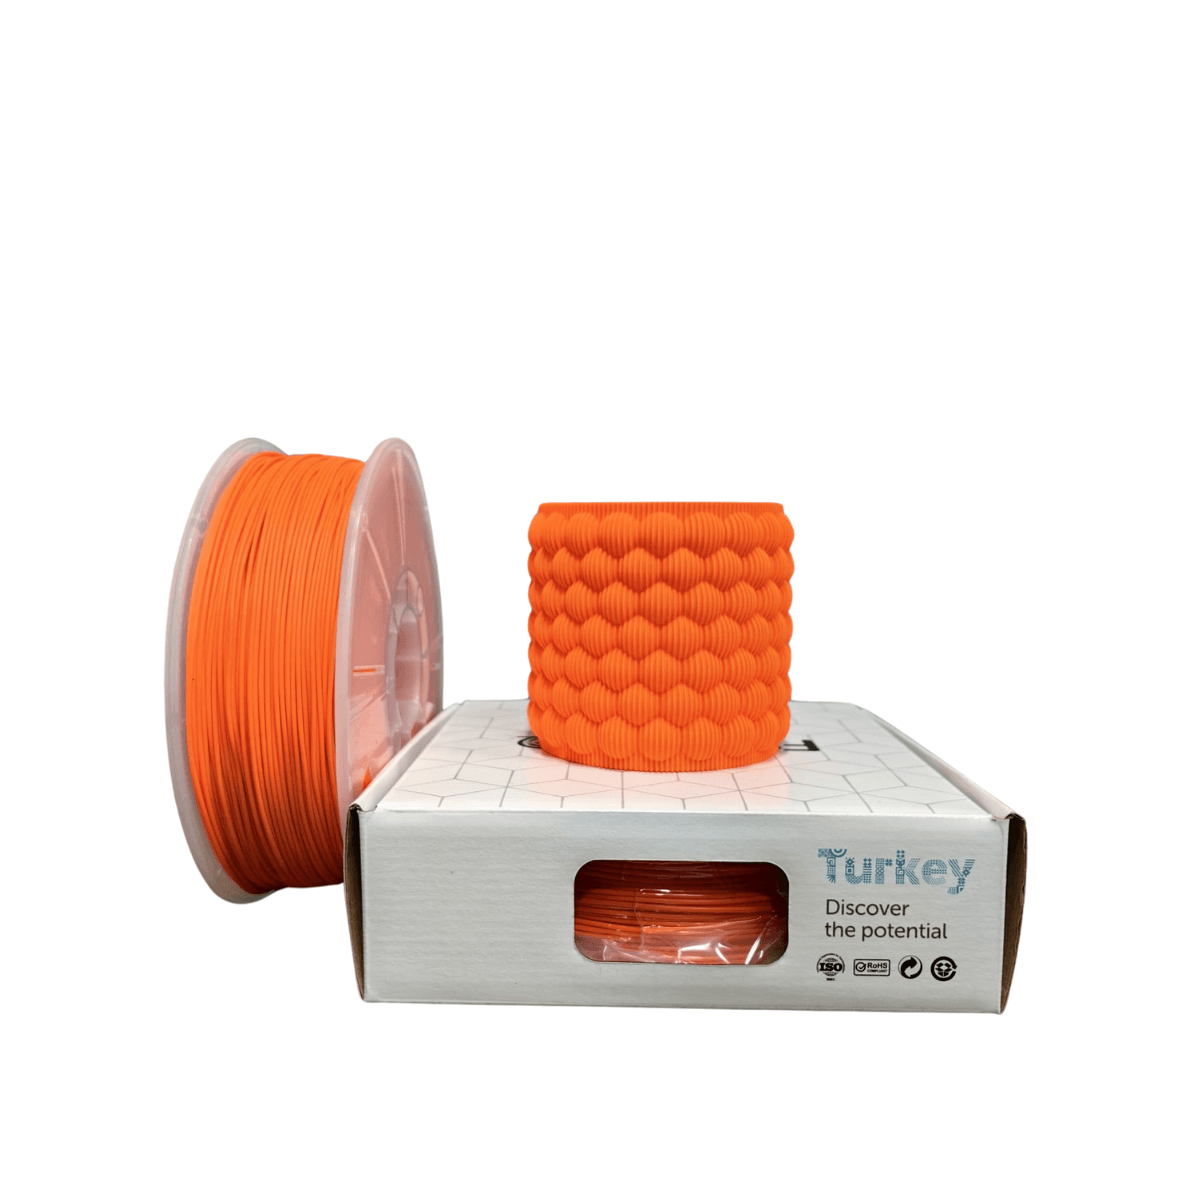 Filetto Pla+ Filament 1.75mm 1 KG - Turuncu